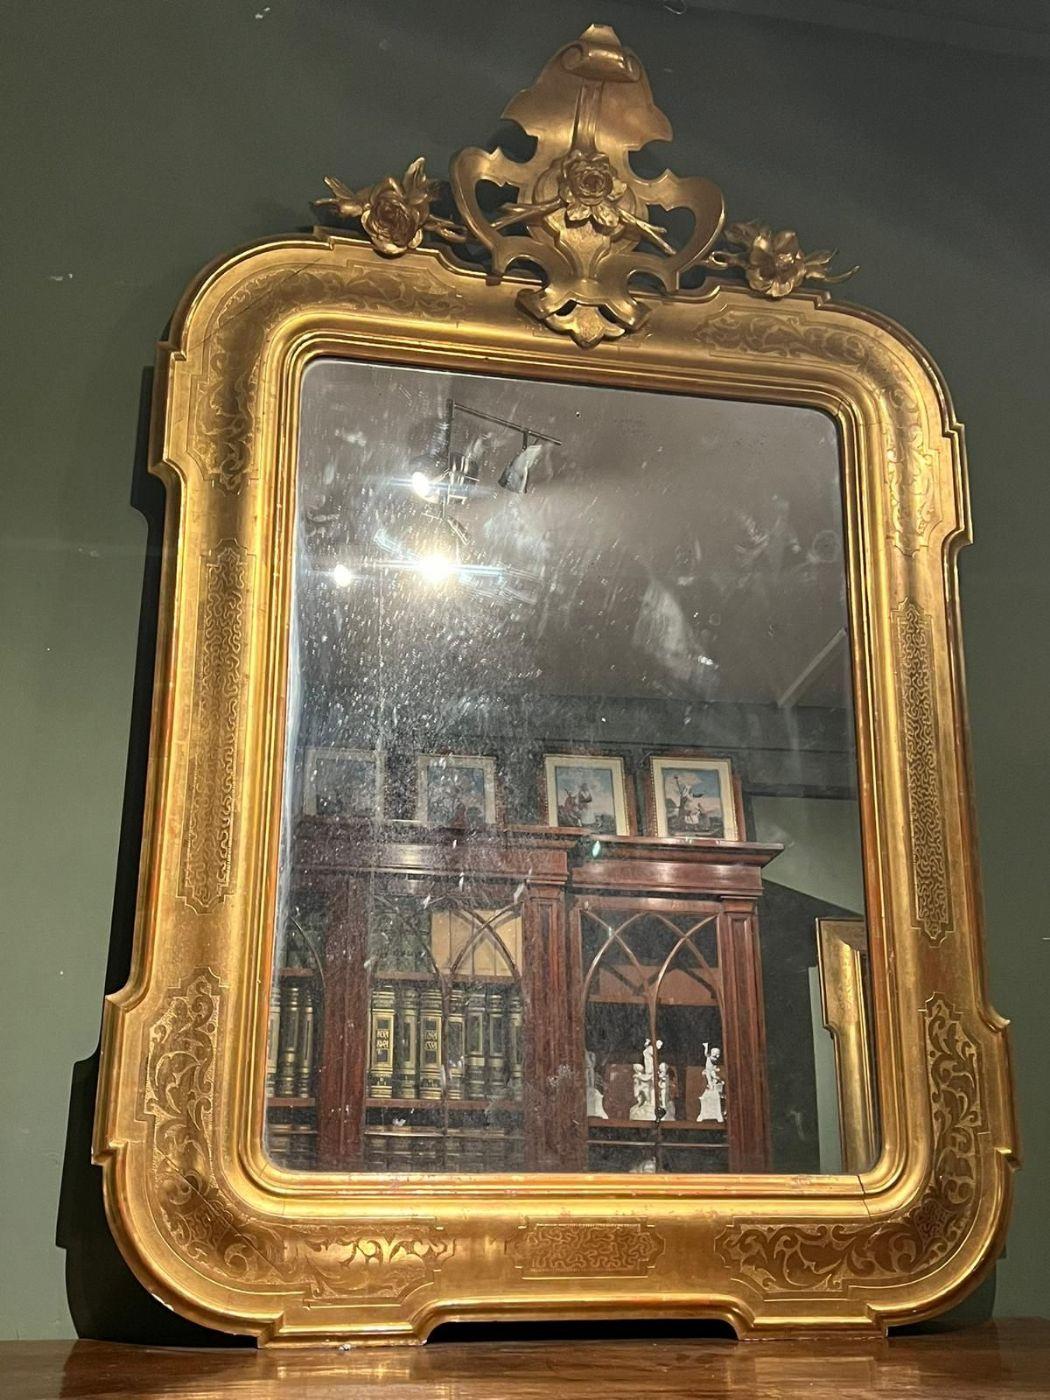 Le miroir proposé ici date du milieu du XIXe siècle.
Le miroir ancien du XIXe siècle a un cadre doré à la feuille d'or pur.
avec une coiffe élégante, ce qui la rend précieuse.
Le miroir est original et intact dans toutes ses parties.